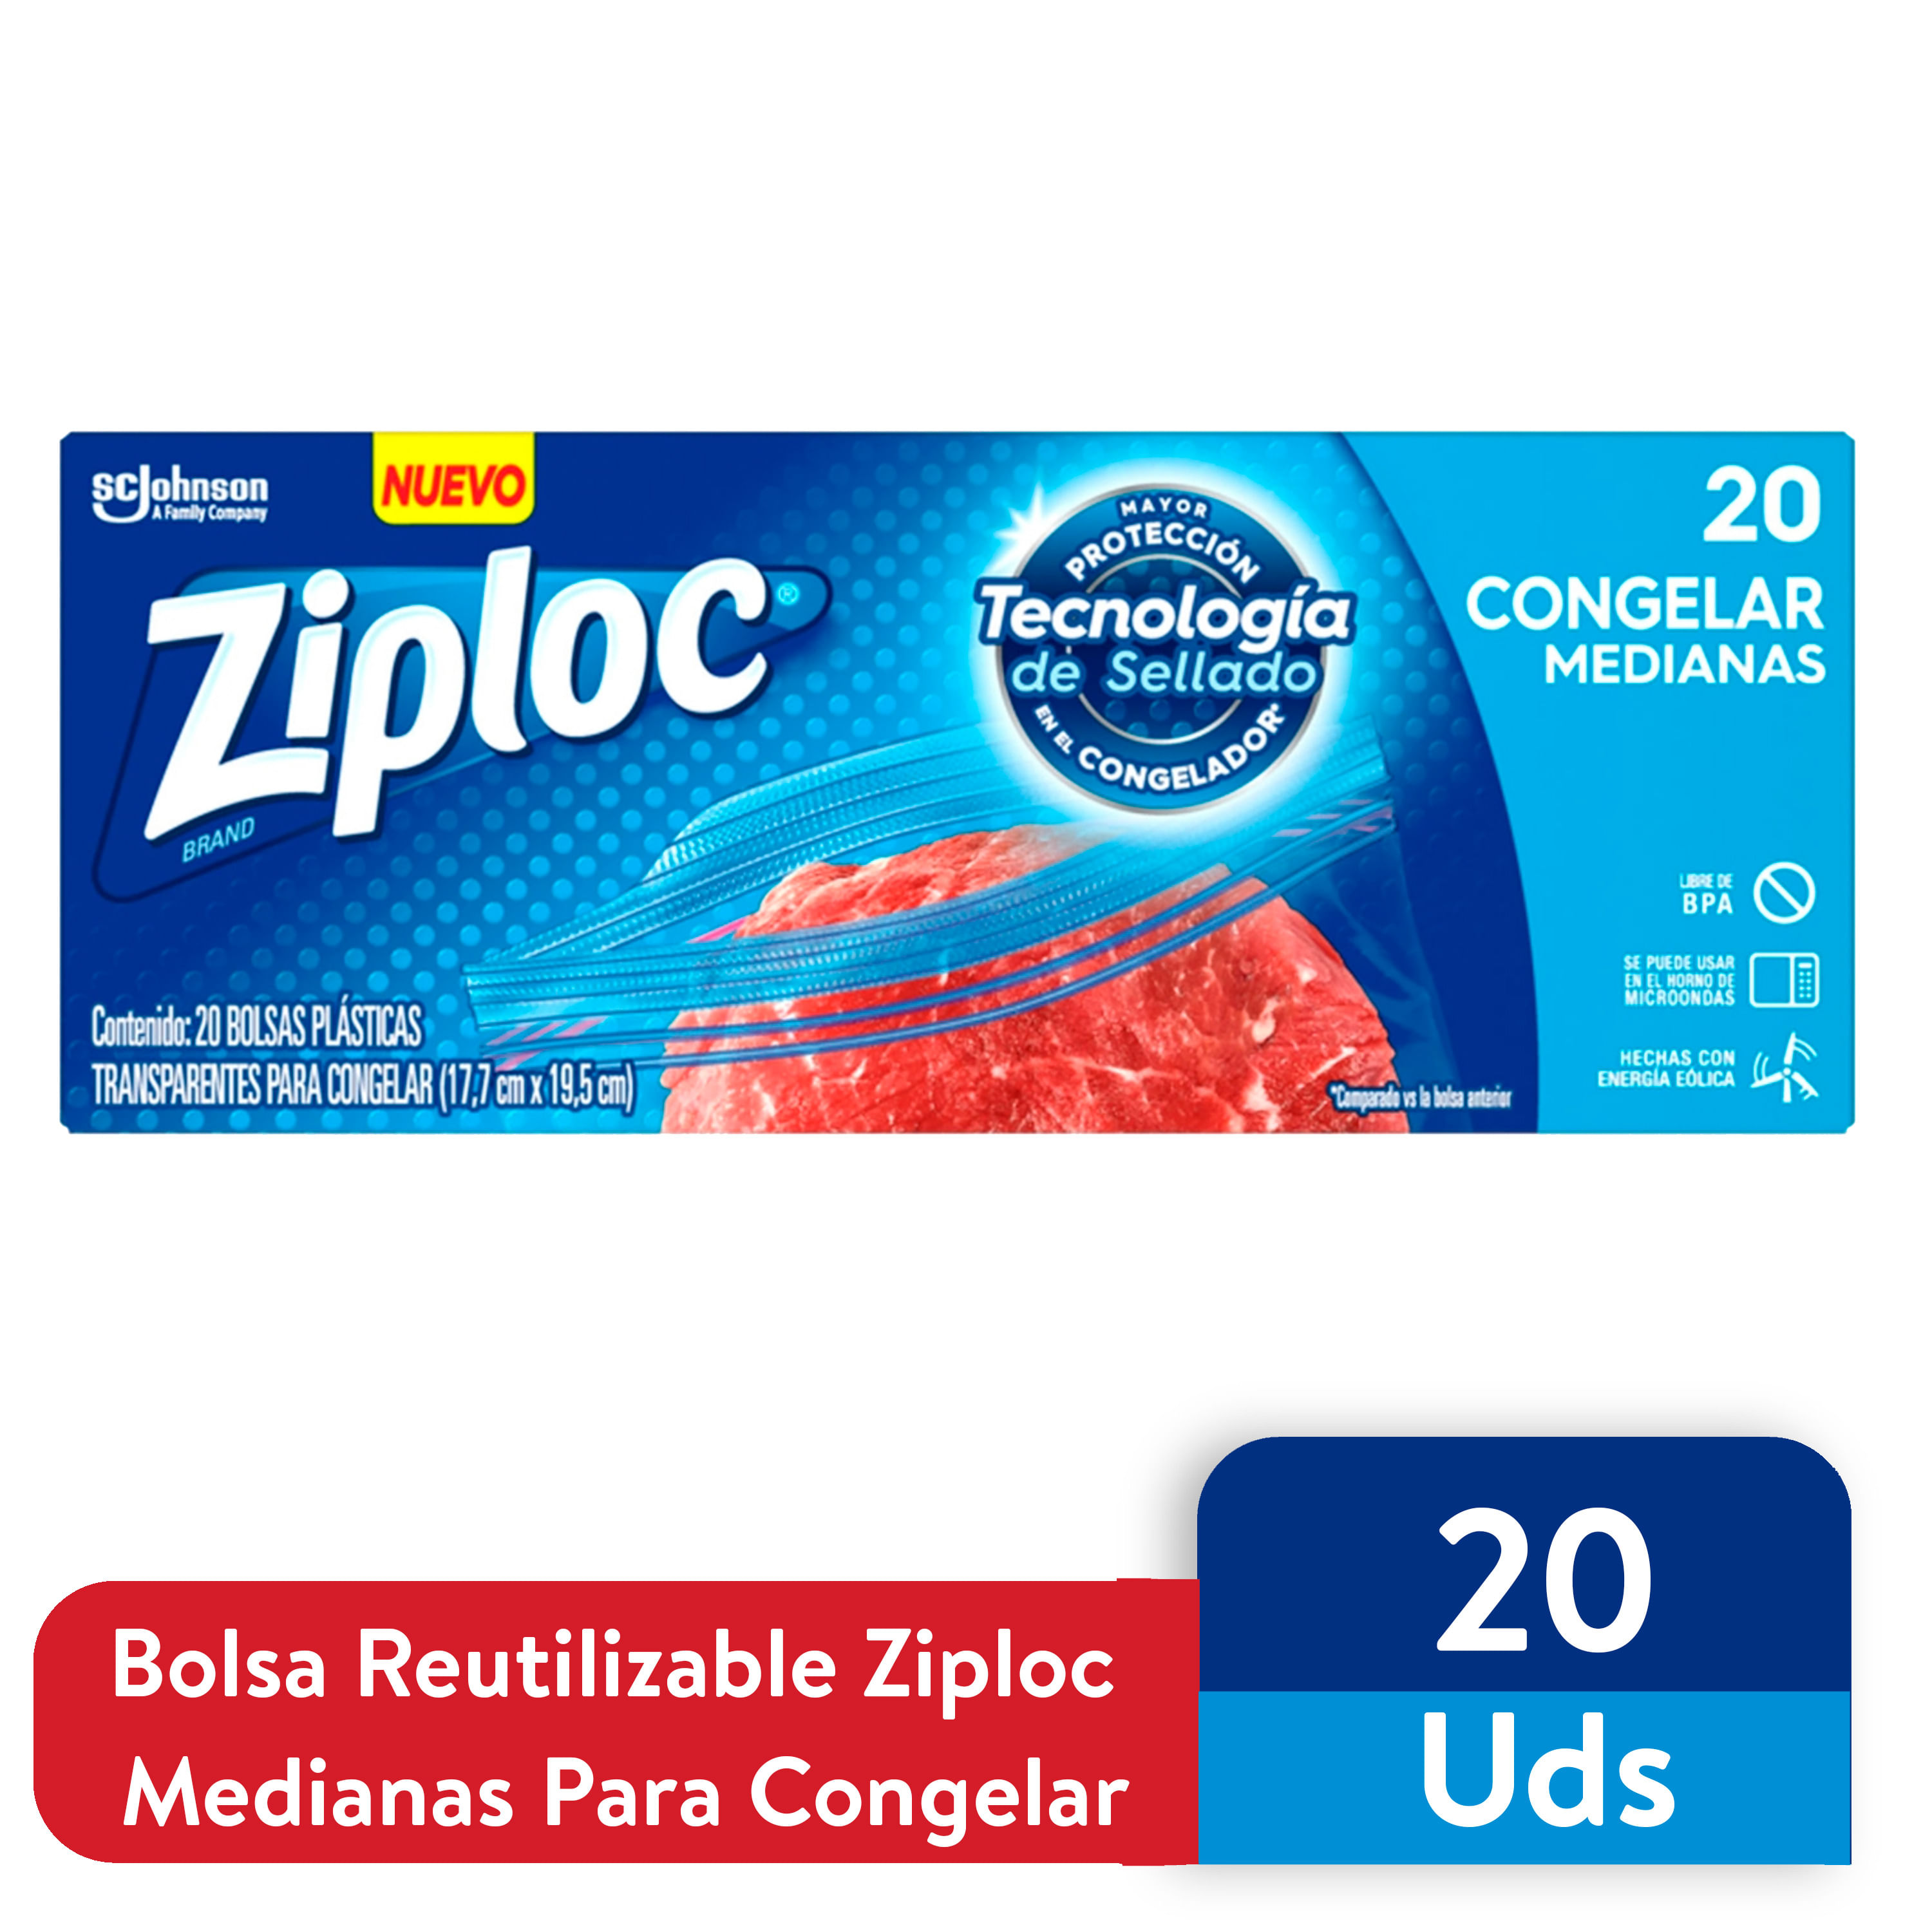 Bolsa-Reutilizable-Ziploc-Para-Congelar-Medianas-20Uds-1-24724